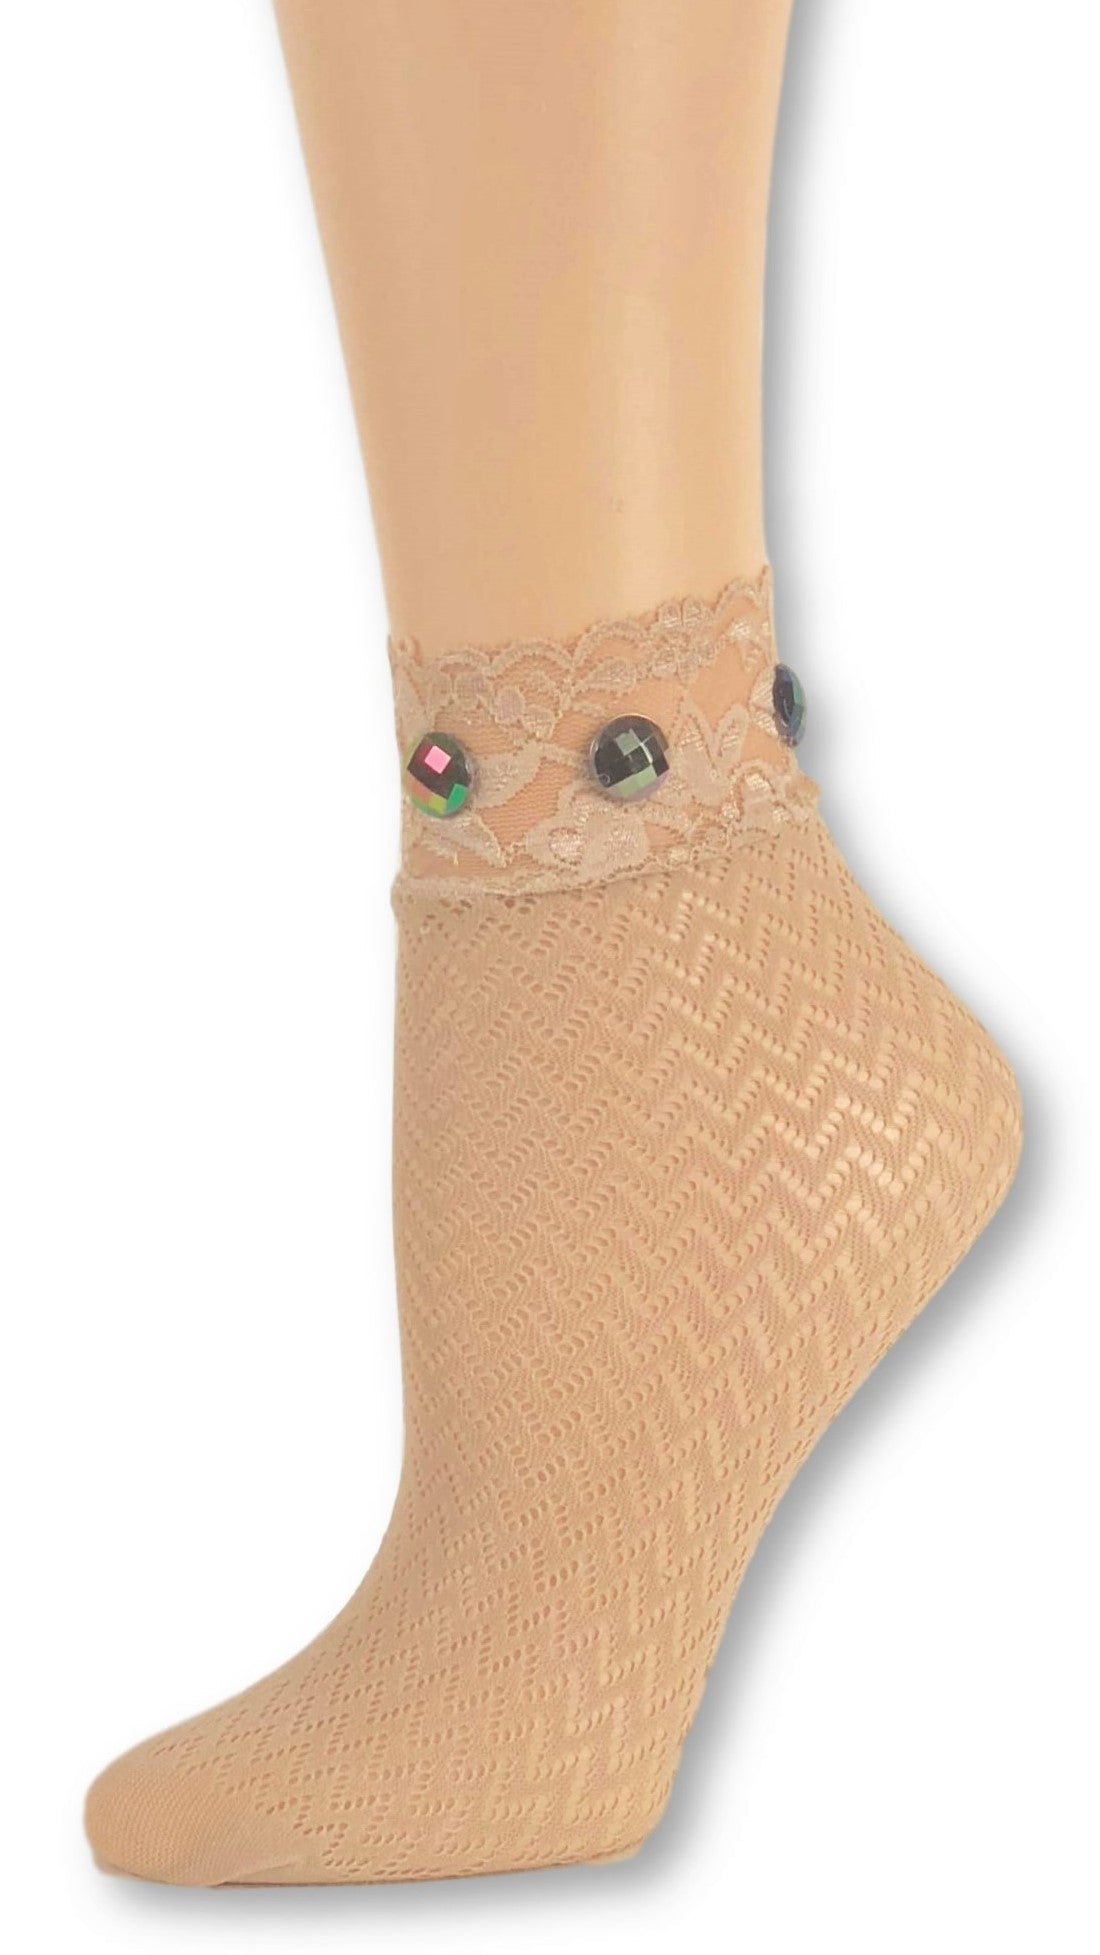 Sleek Beige Custom Mesh Socks with beads - Global Trendz Fashion®